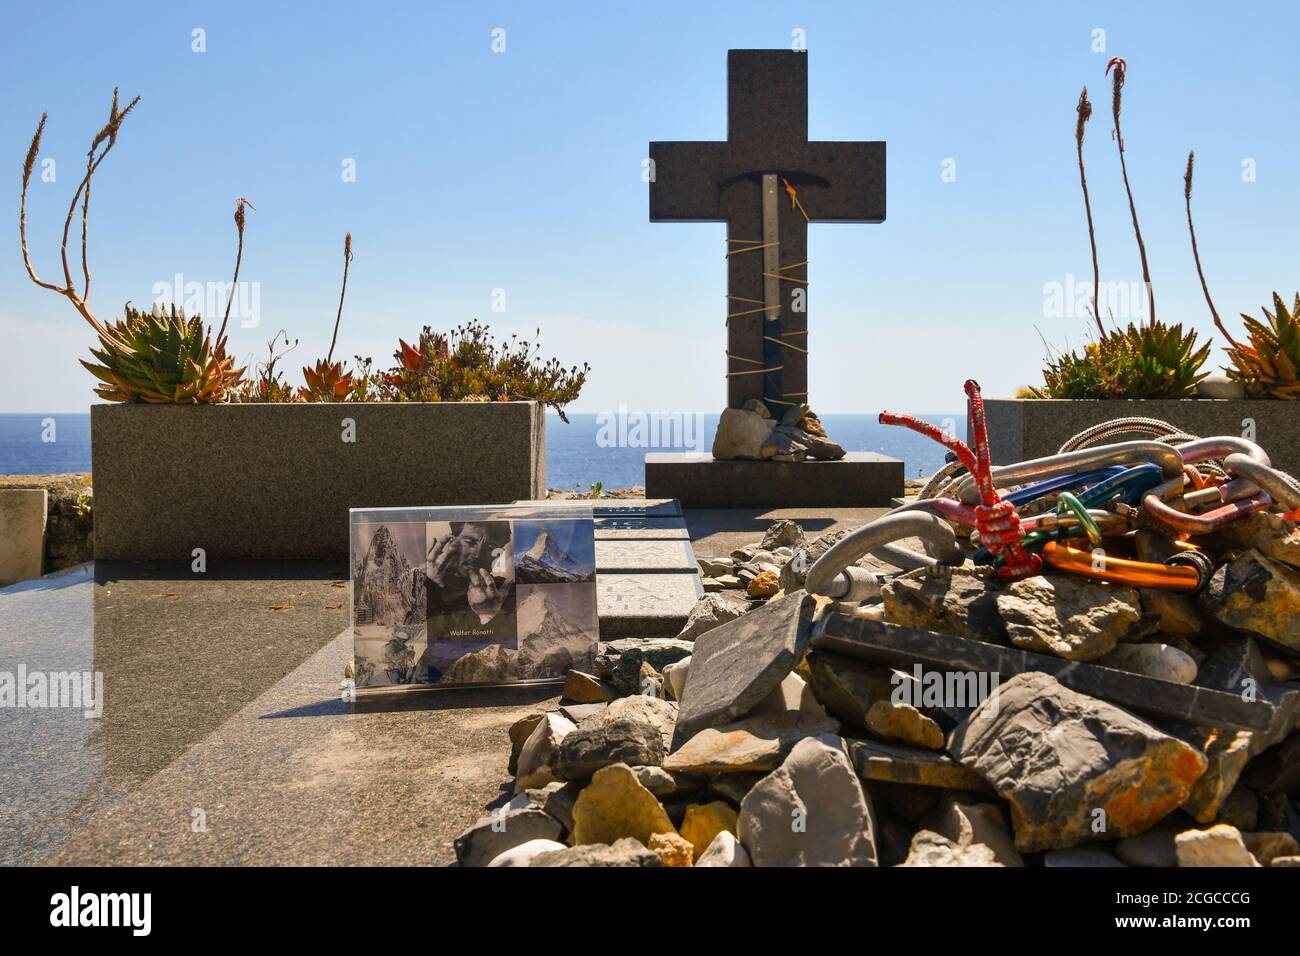 La tomba del famoso alpinista Walter Bonatti (1930-2011) nel cimitero che domina il mare, Porto Venere, la Spezia, Liguria, Italia Foto Stock